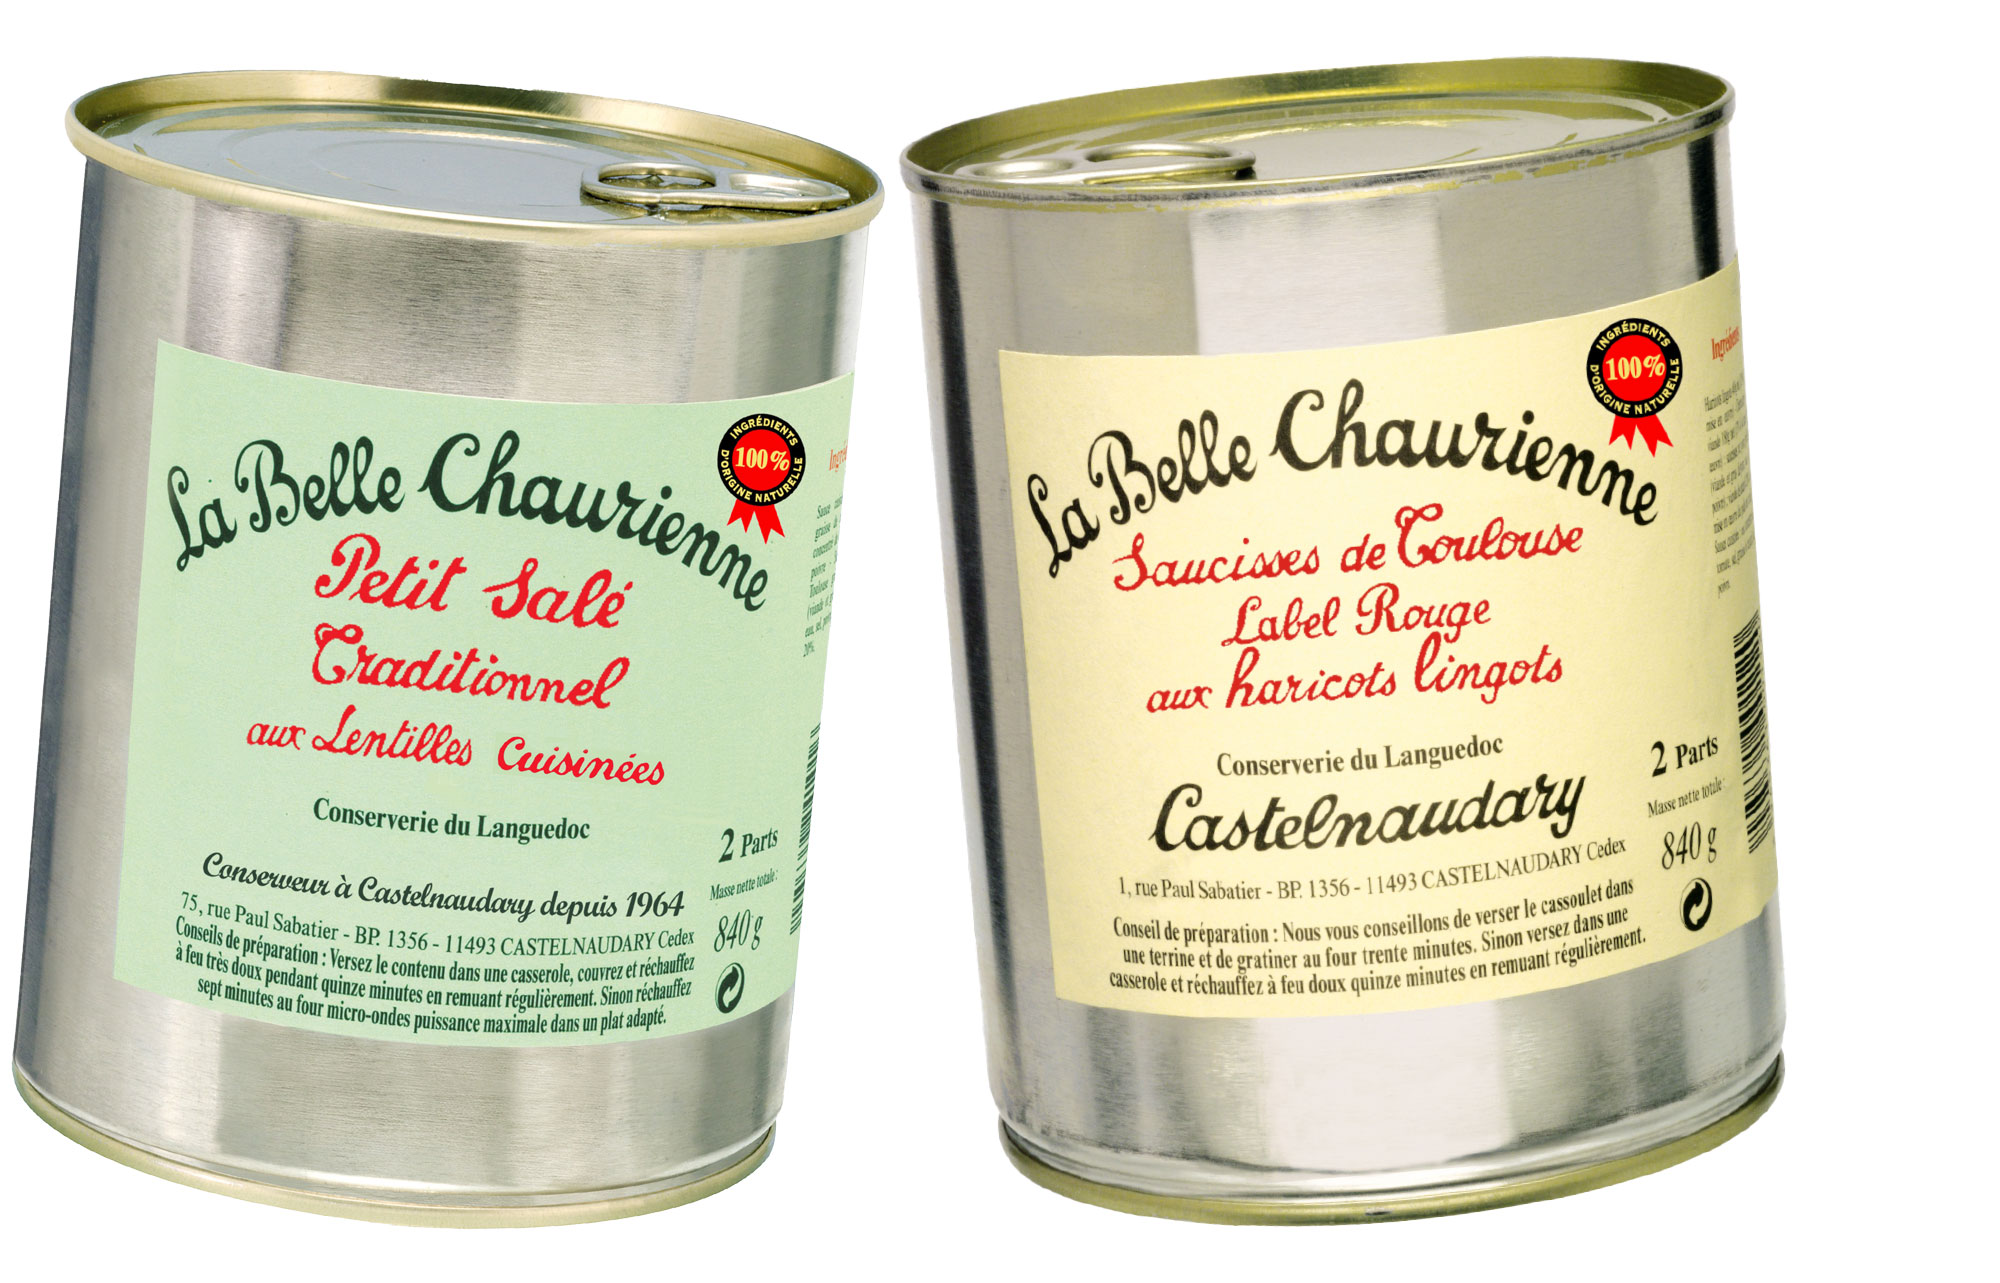 Deux recettes gourmandes et traditionnelles de La Belle Chaurienne